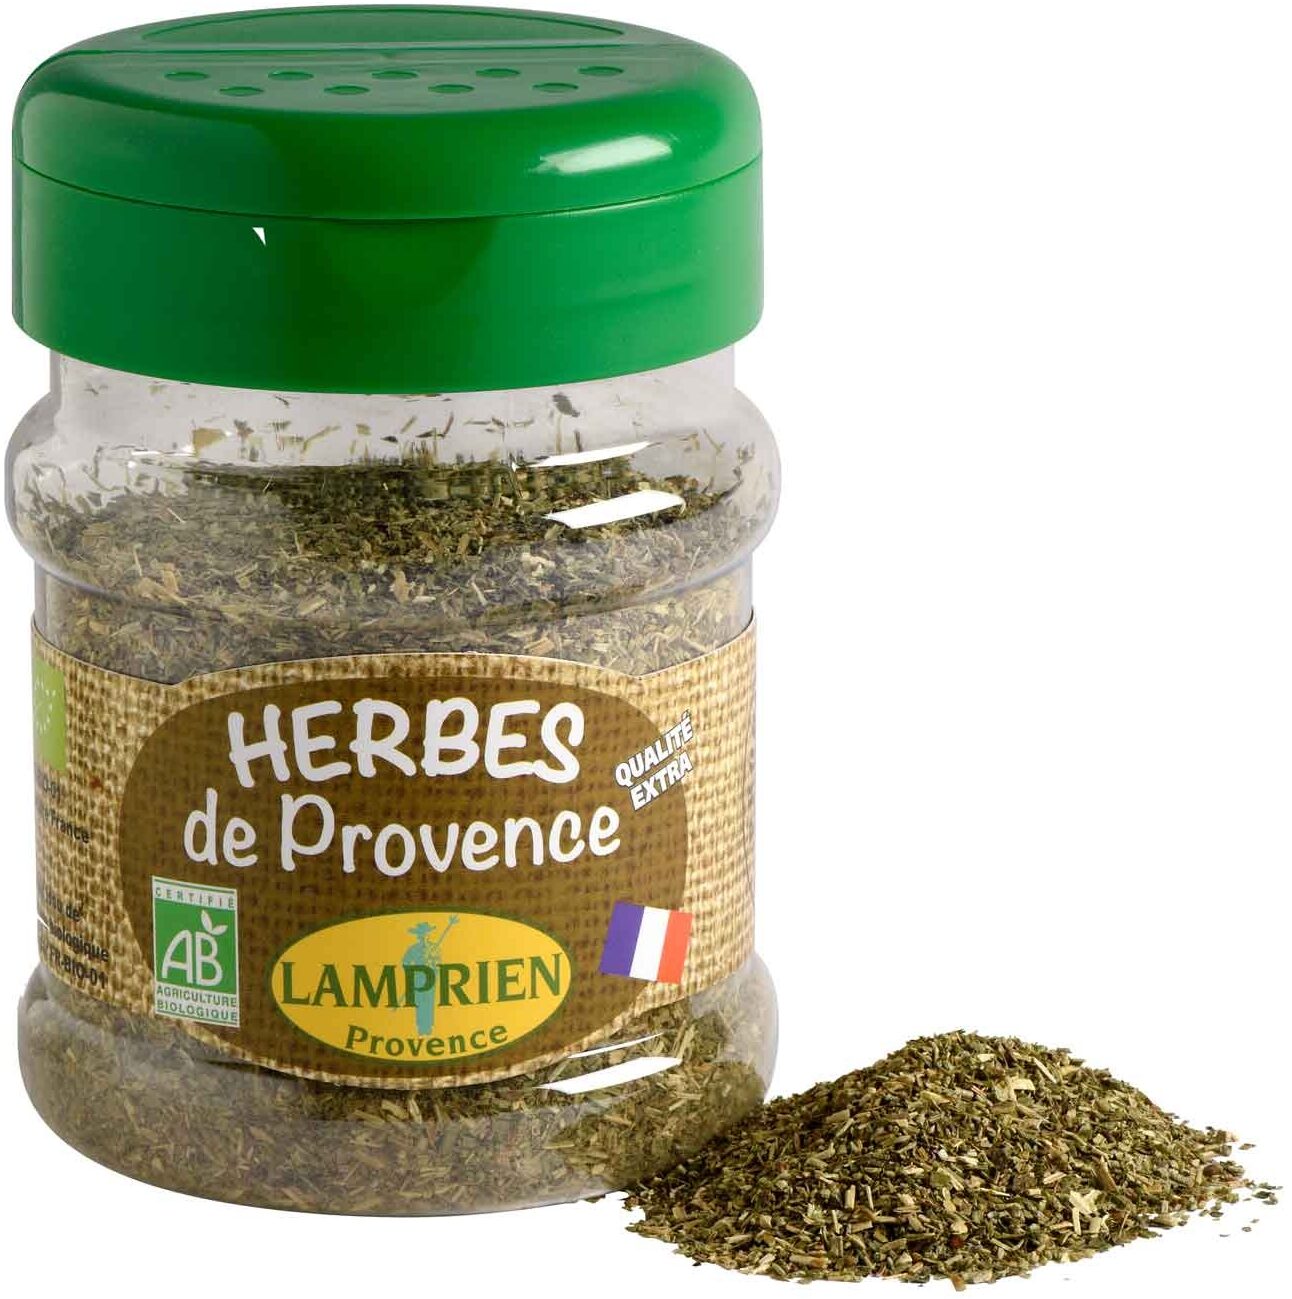 Herbes de Provence BIO - Nutrition facts - fr